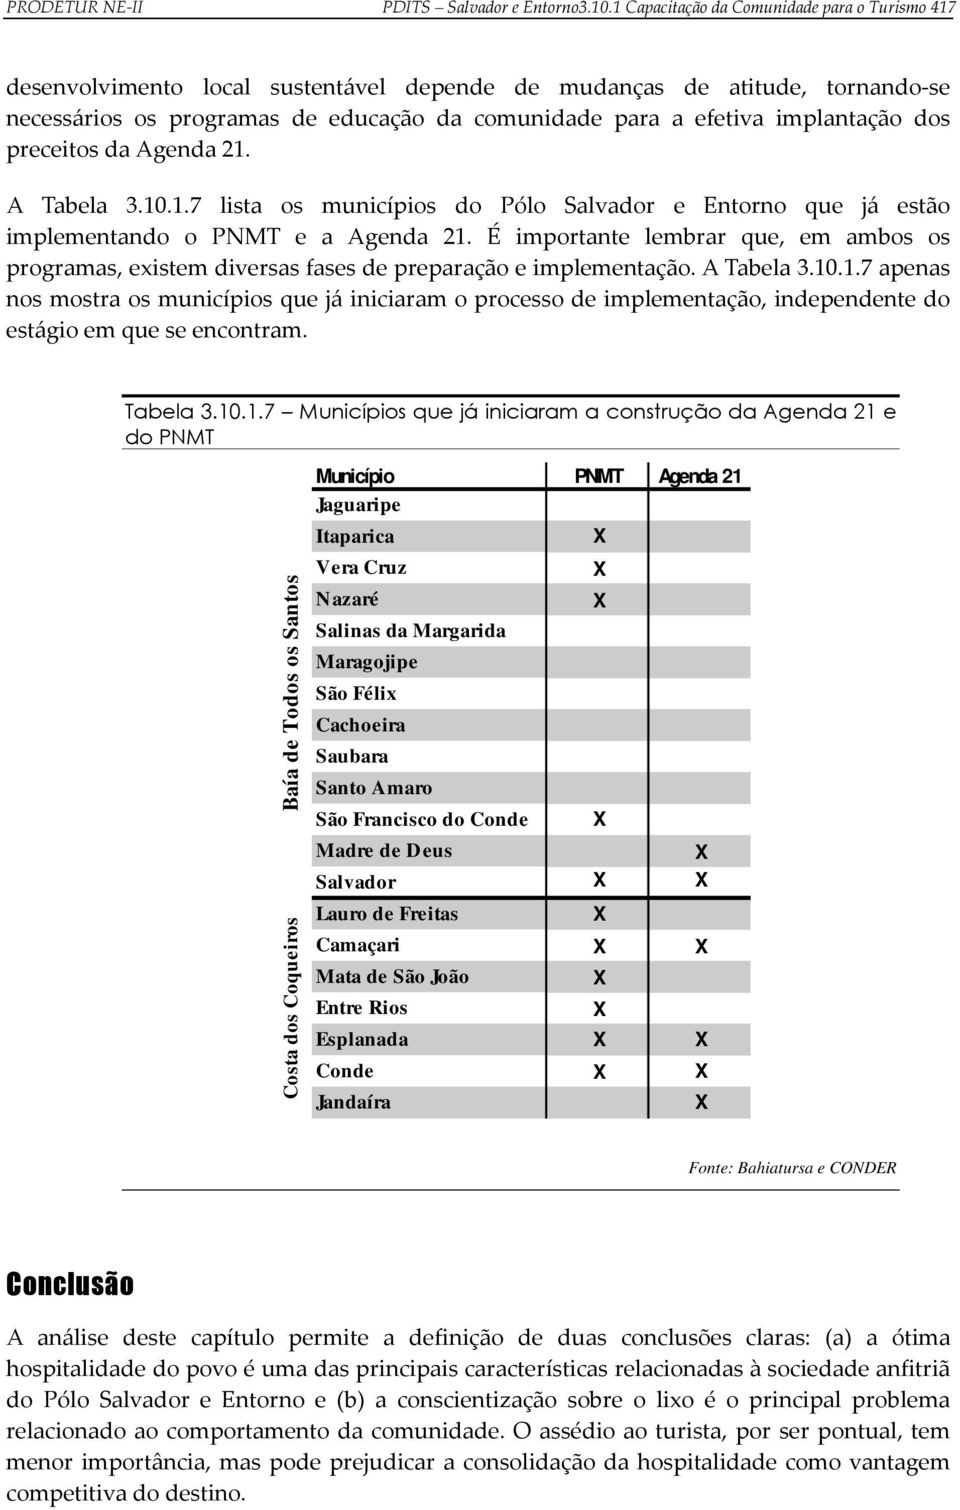 implantação dos preceitos da Agenda 21. A Tabela 3.10.1.7 lista os municípios do Pólo Salvador e Entorno que já estão implementando o PNMT e a Agenda 21.